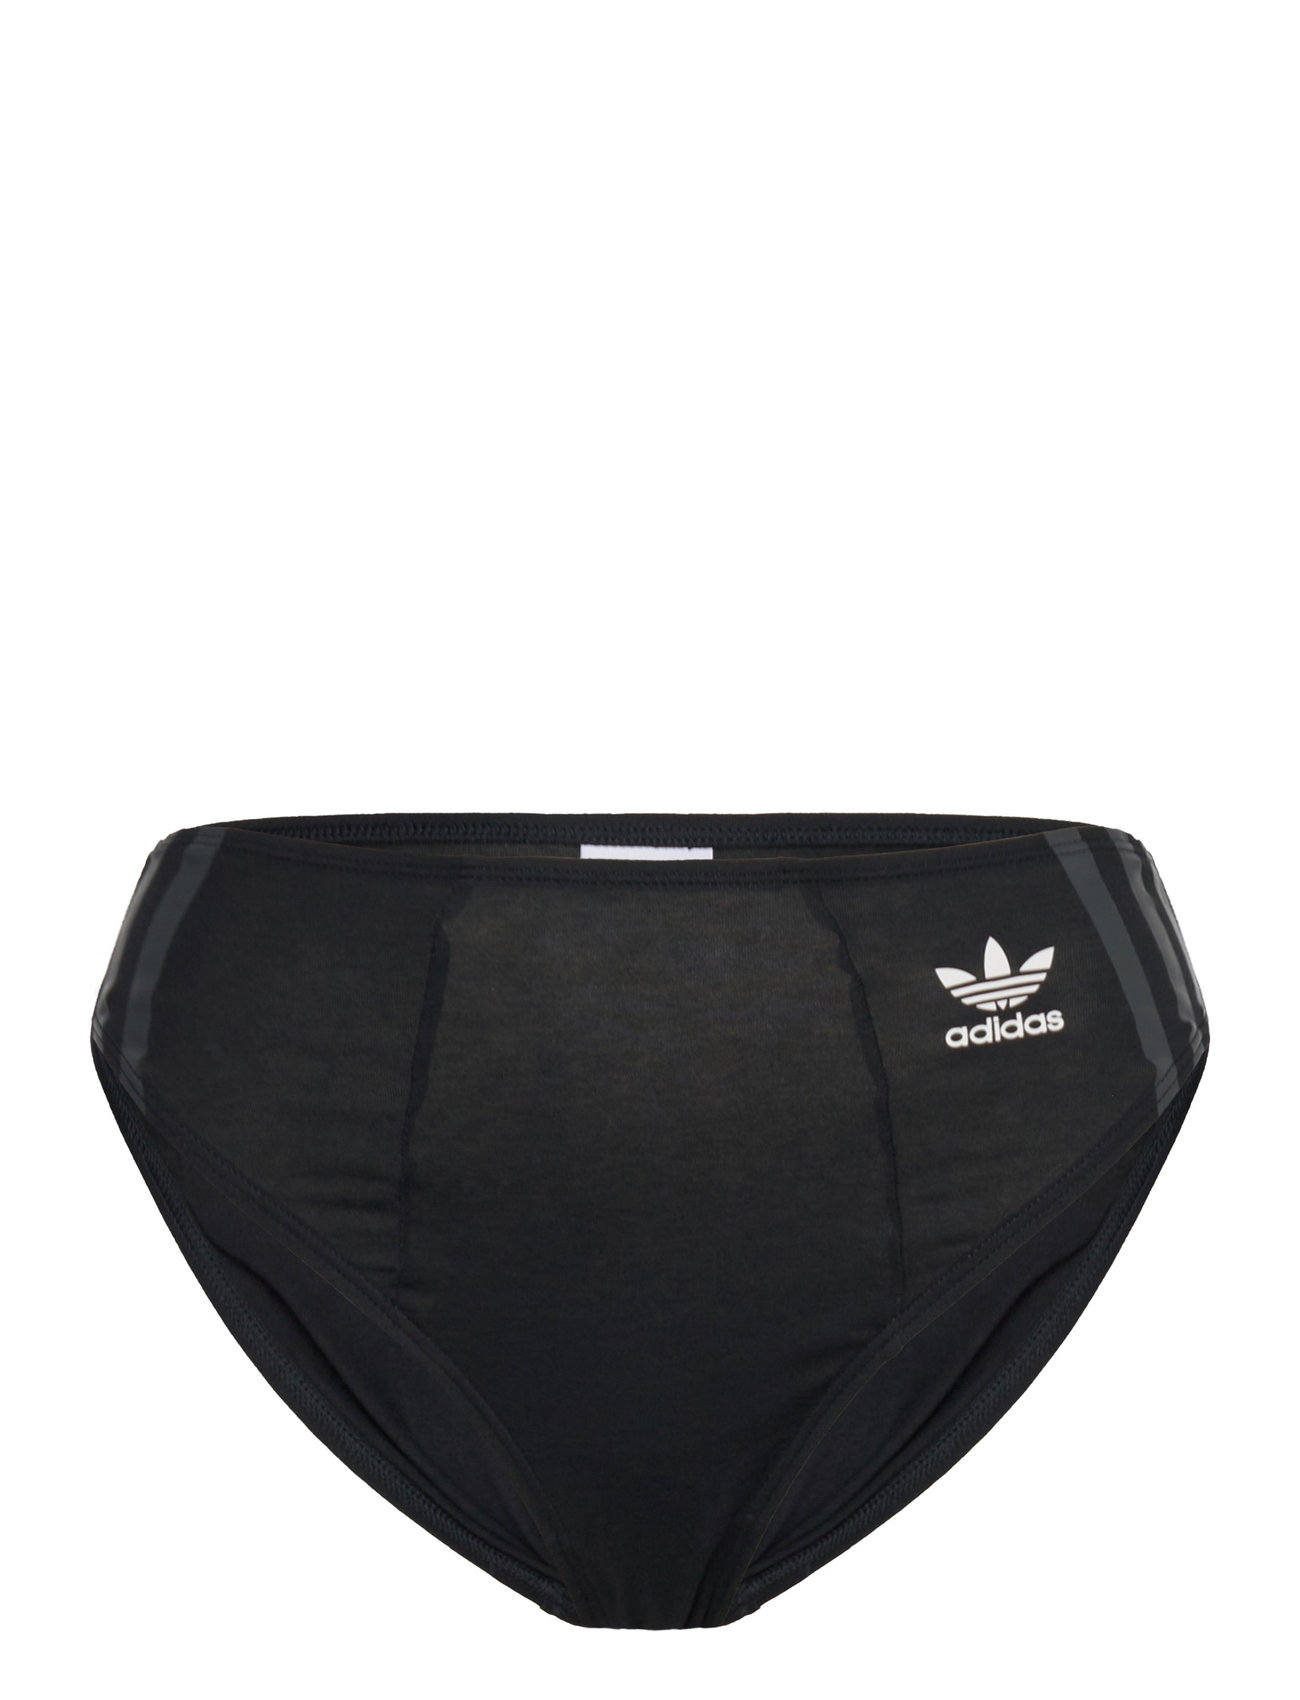 adidas Underwear Shorts – underwear – shop at Booztlet